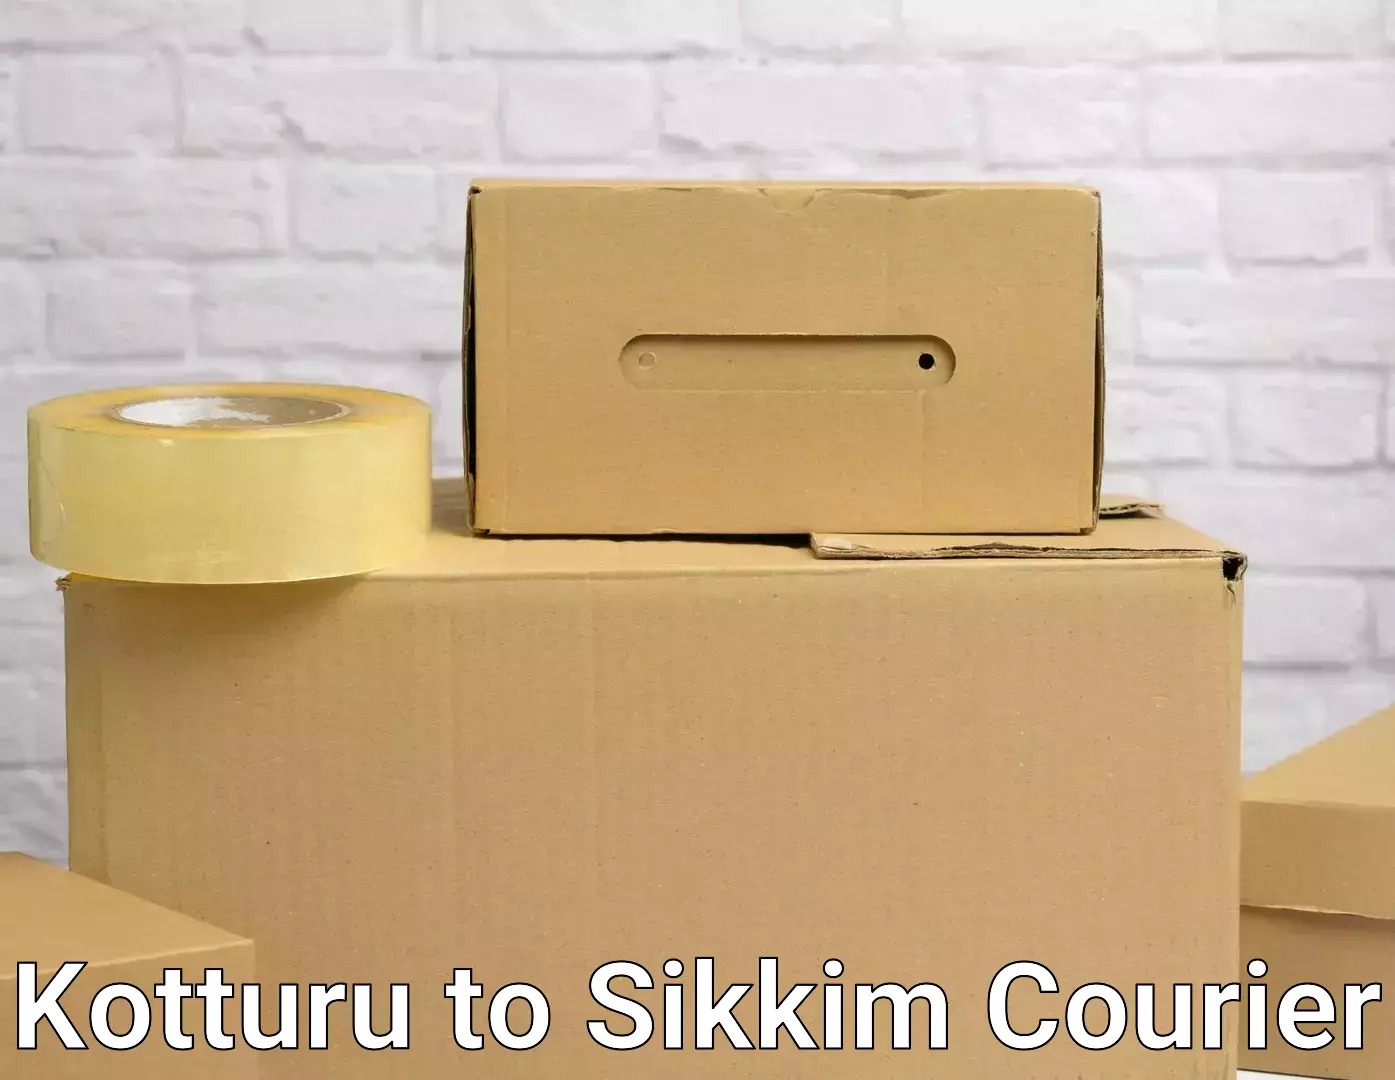 Efficient home relocation Kotturu to North Sikkim